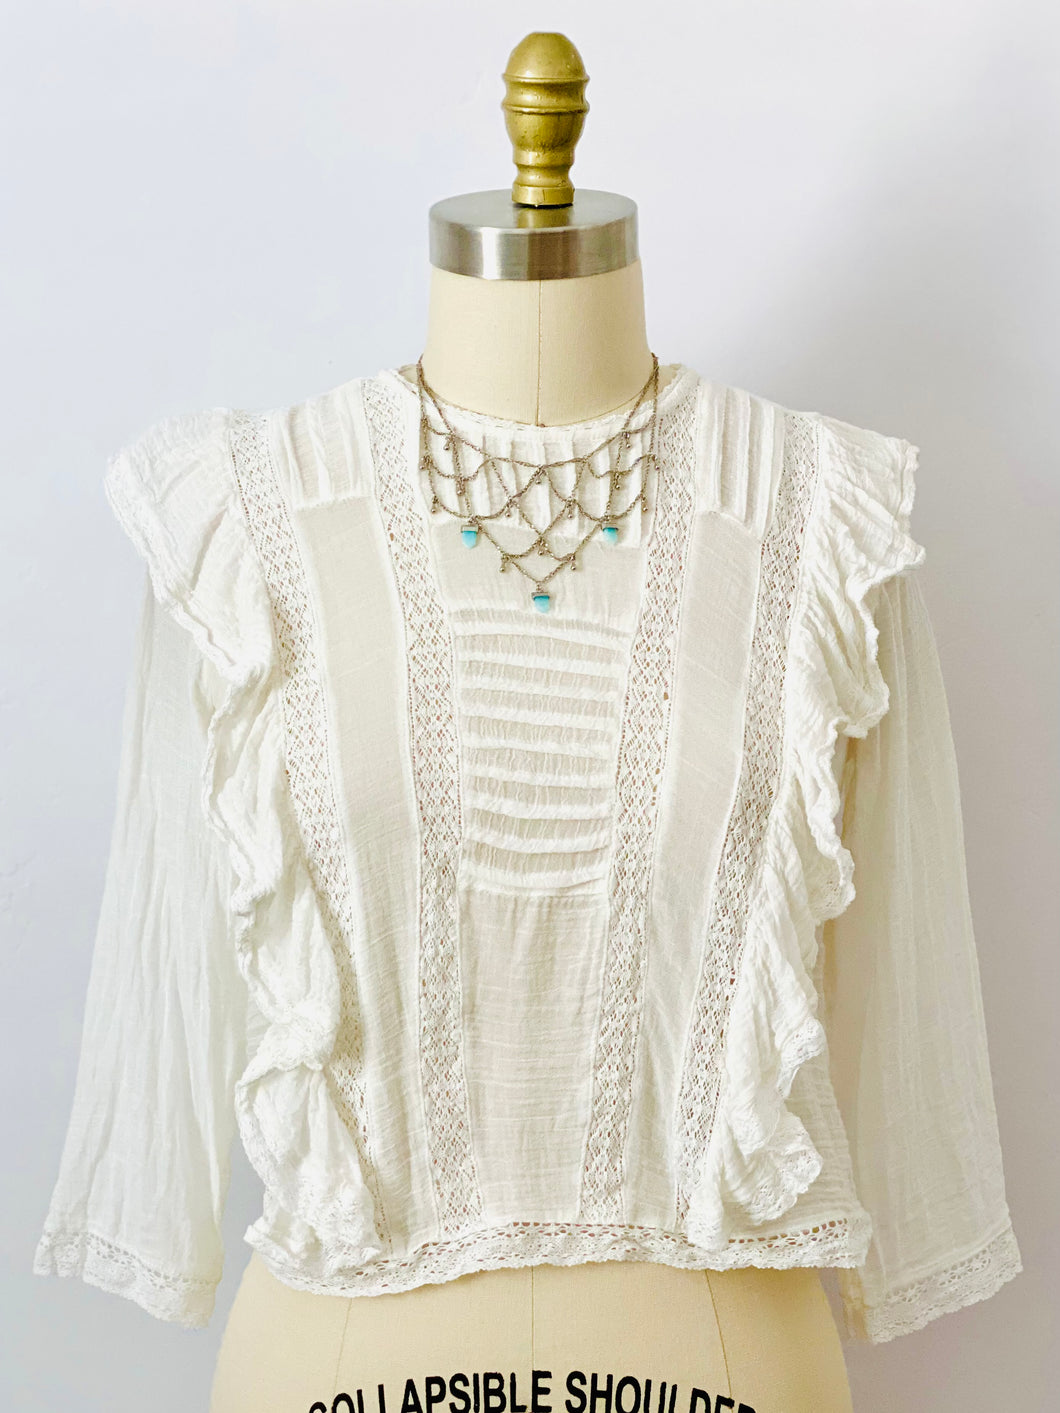 Vintage style white lace cotton crop top